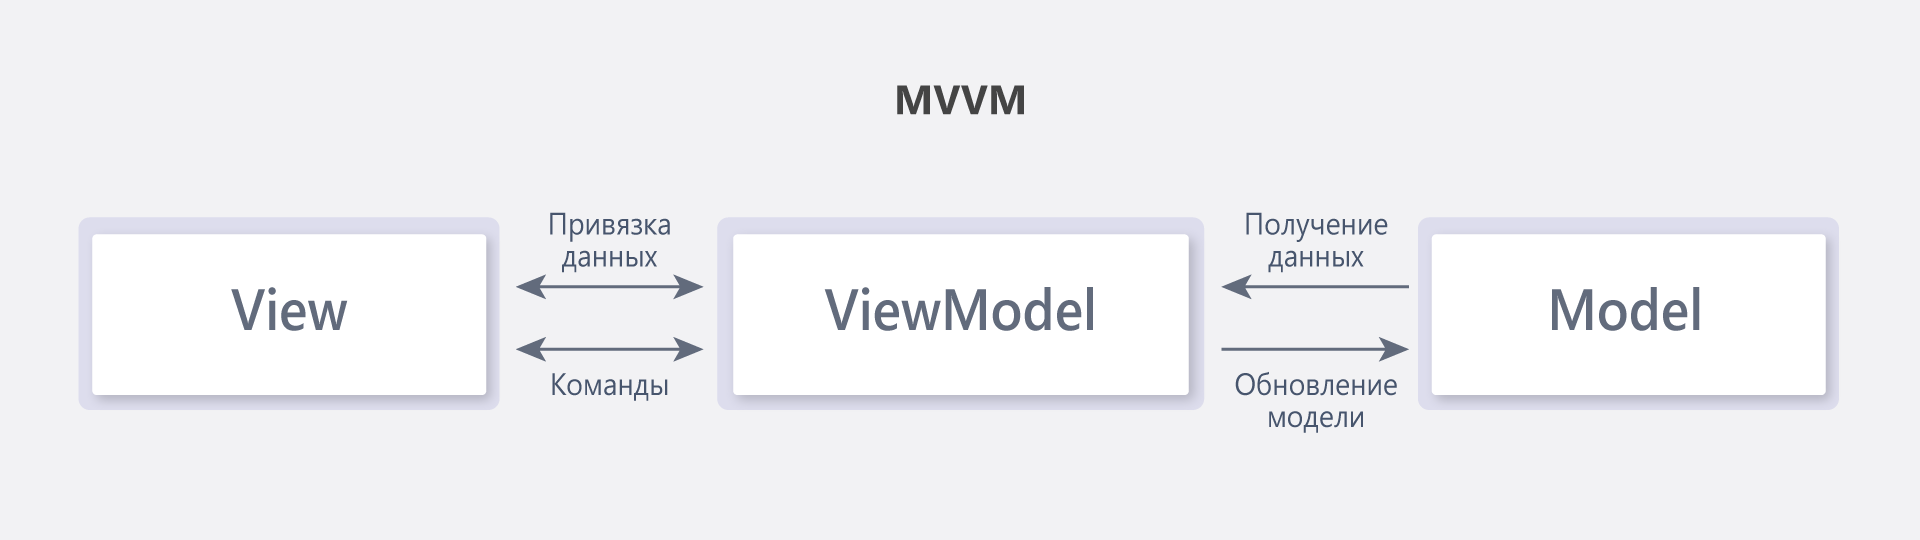 Структура архітектури MVVM.